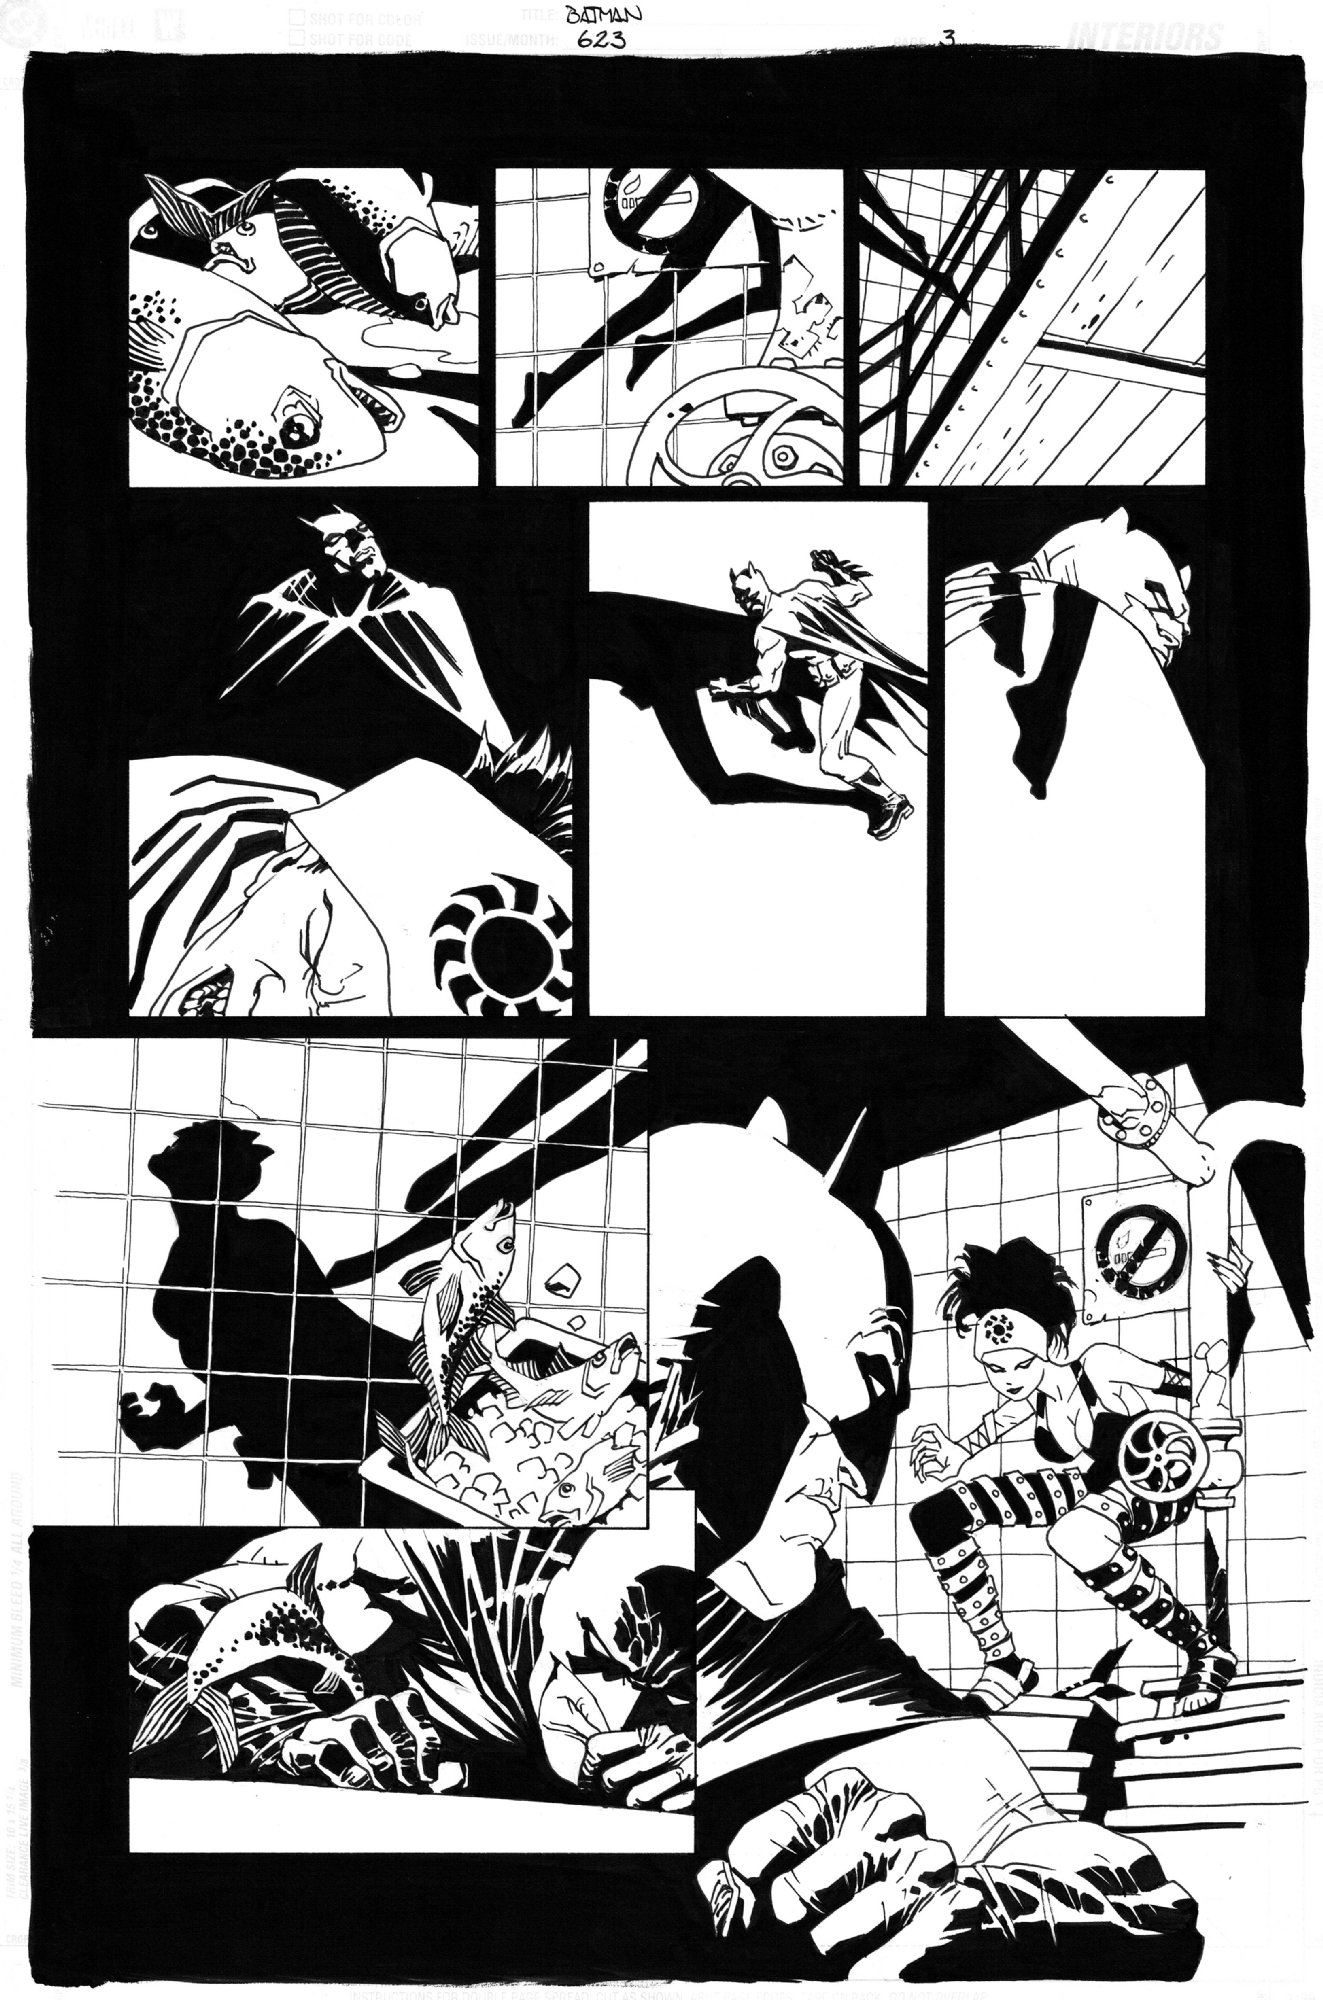 Eduardo Risso - Batman # 623 pg. 3 - Broken City, in Nicolaj Borch's Eduardo  Risso - Batman Comic Art Gallery Room